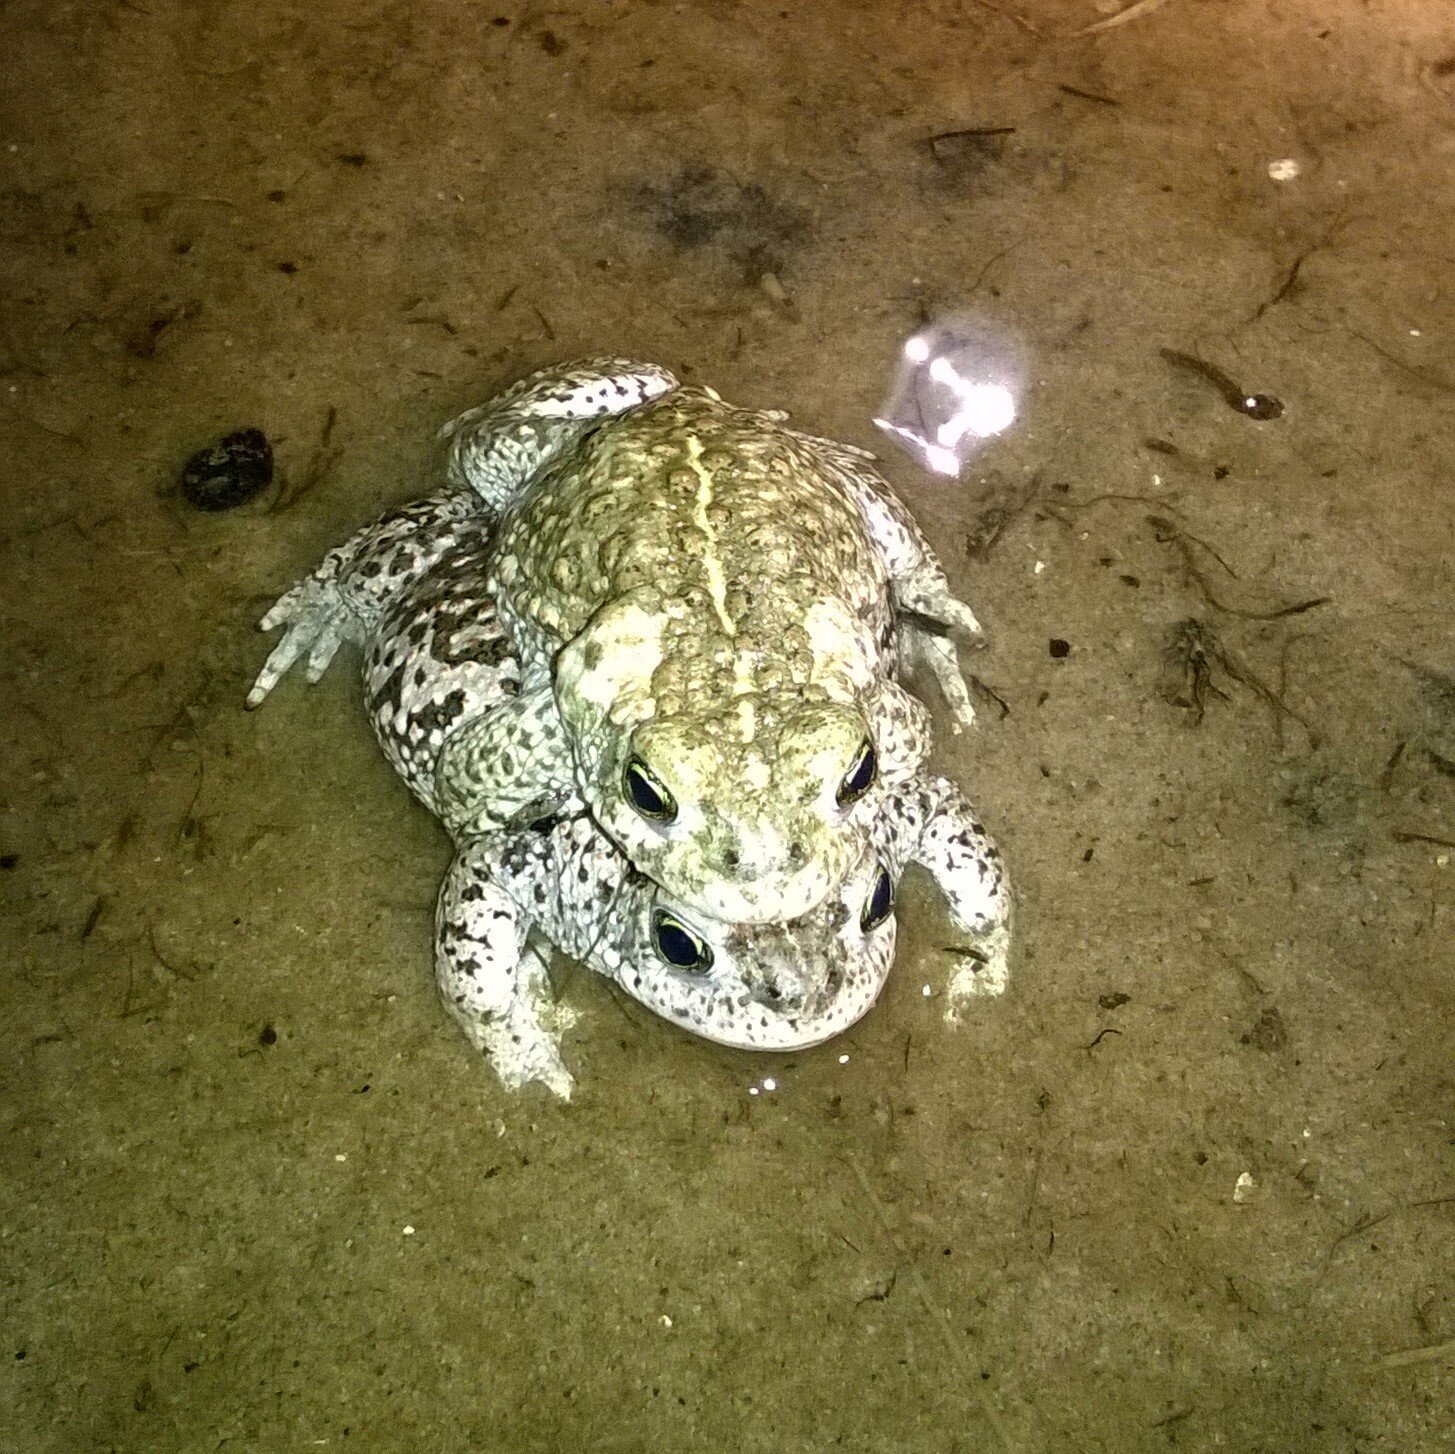 Natterjack toad.jpg